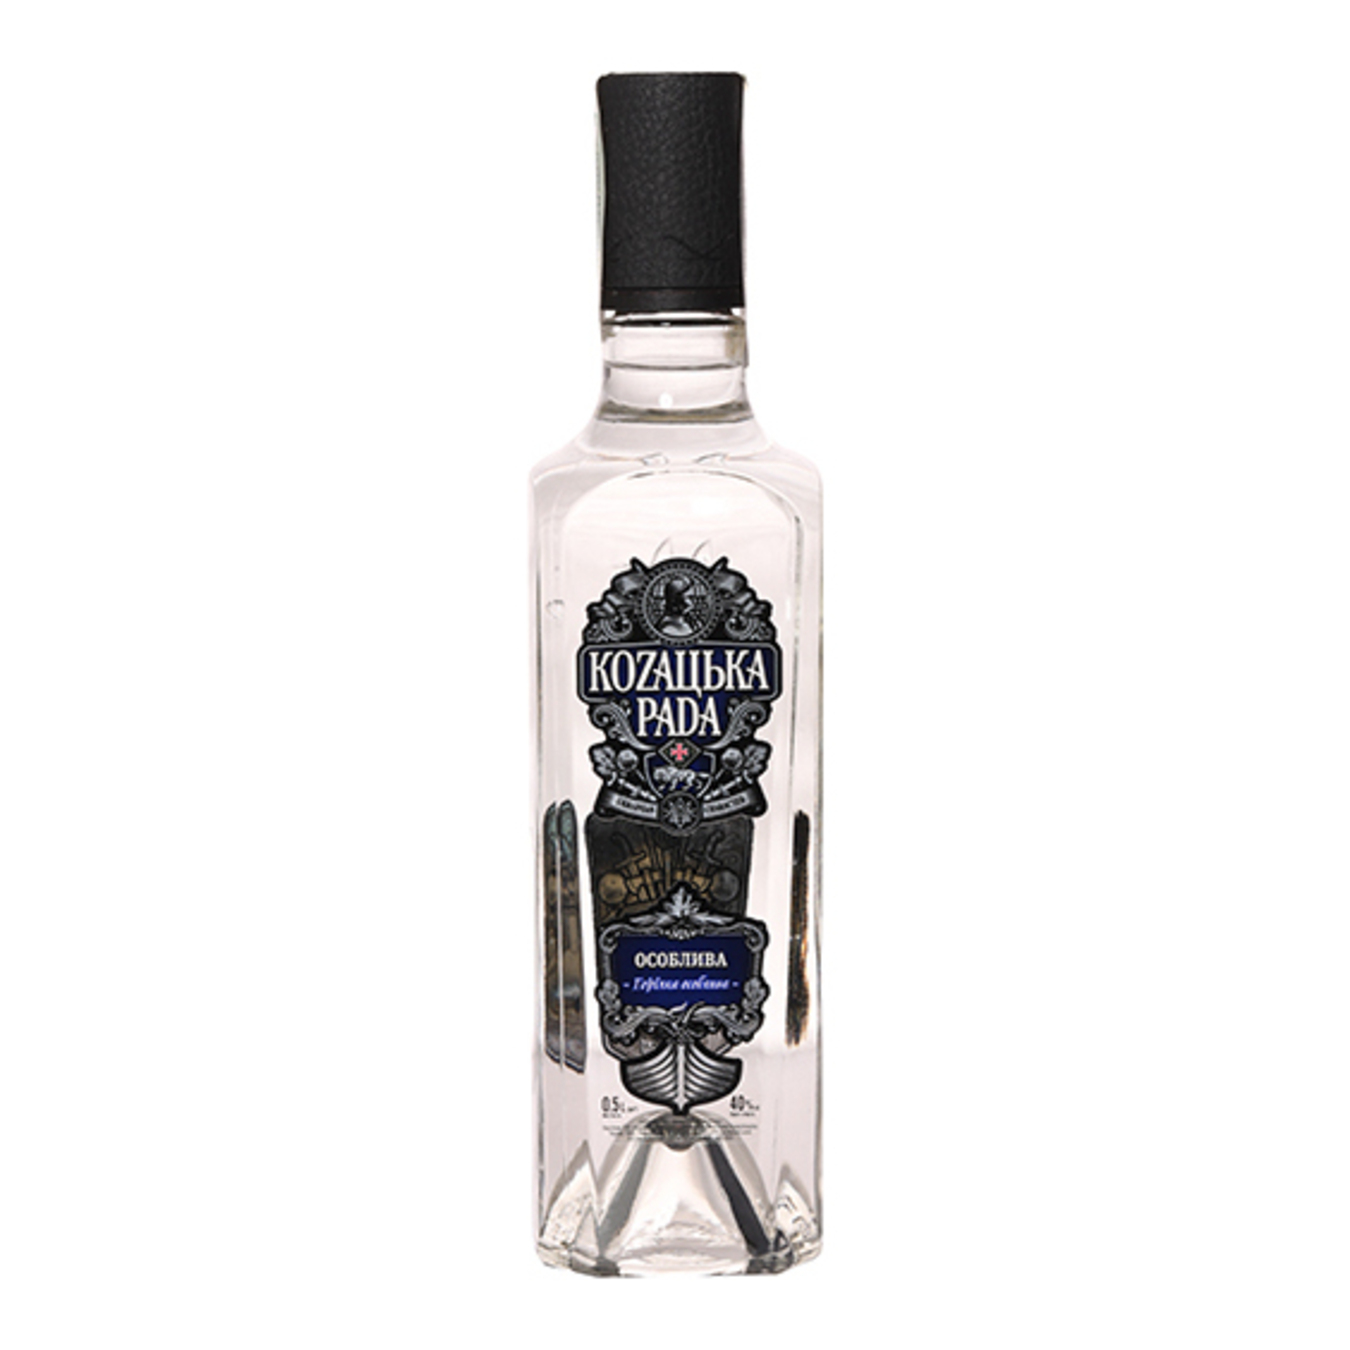 Kozaцьka Rada Vodka Special 40% 0,5l